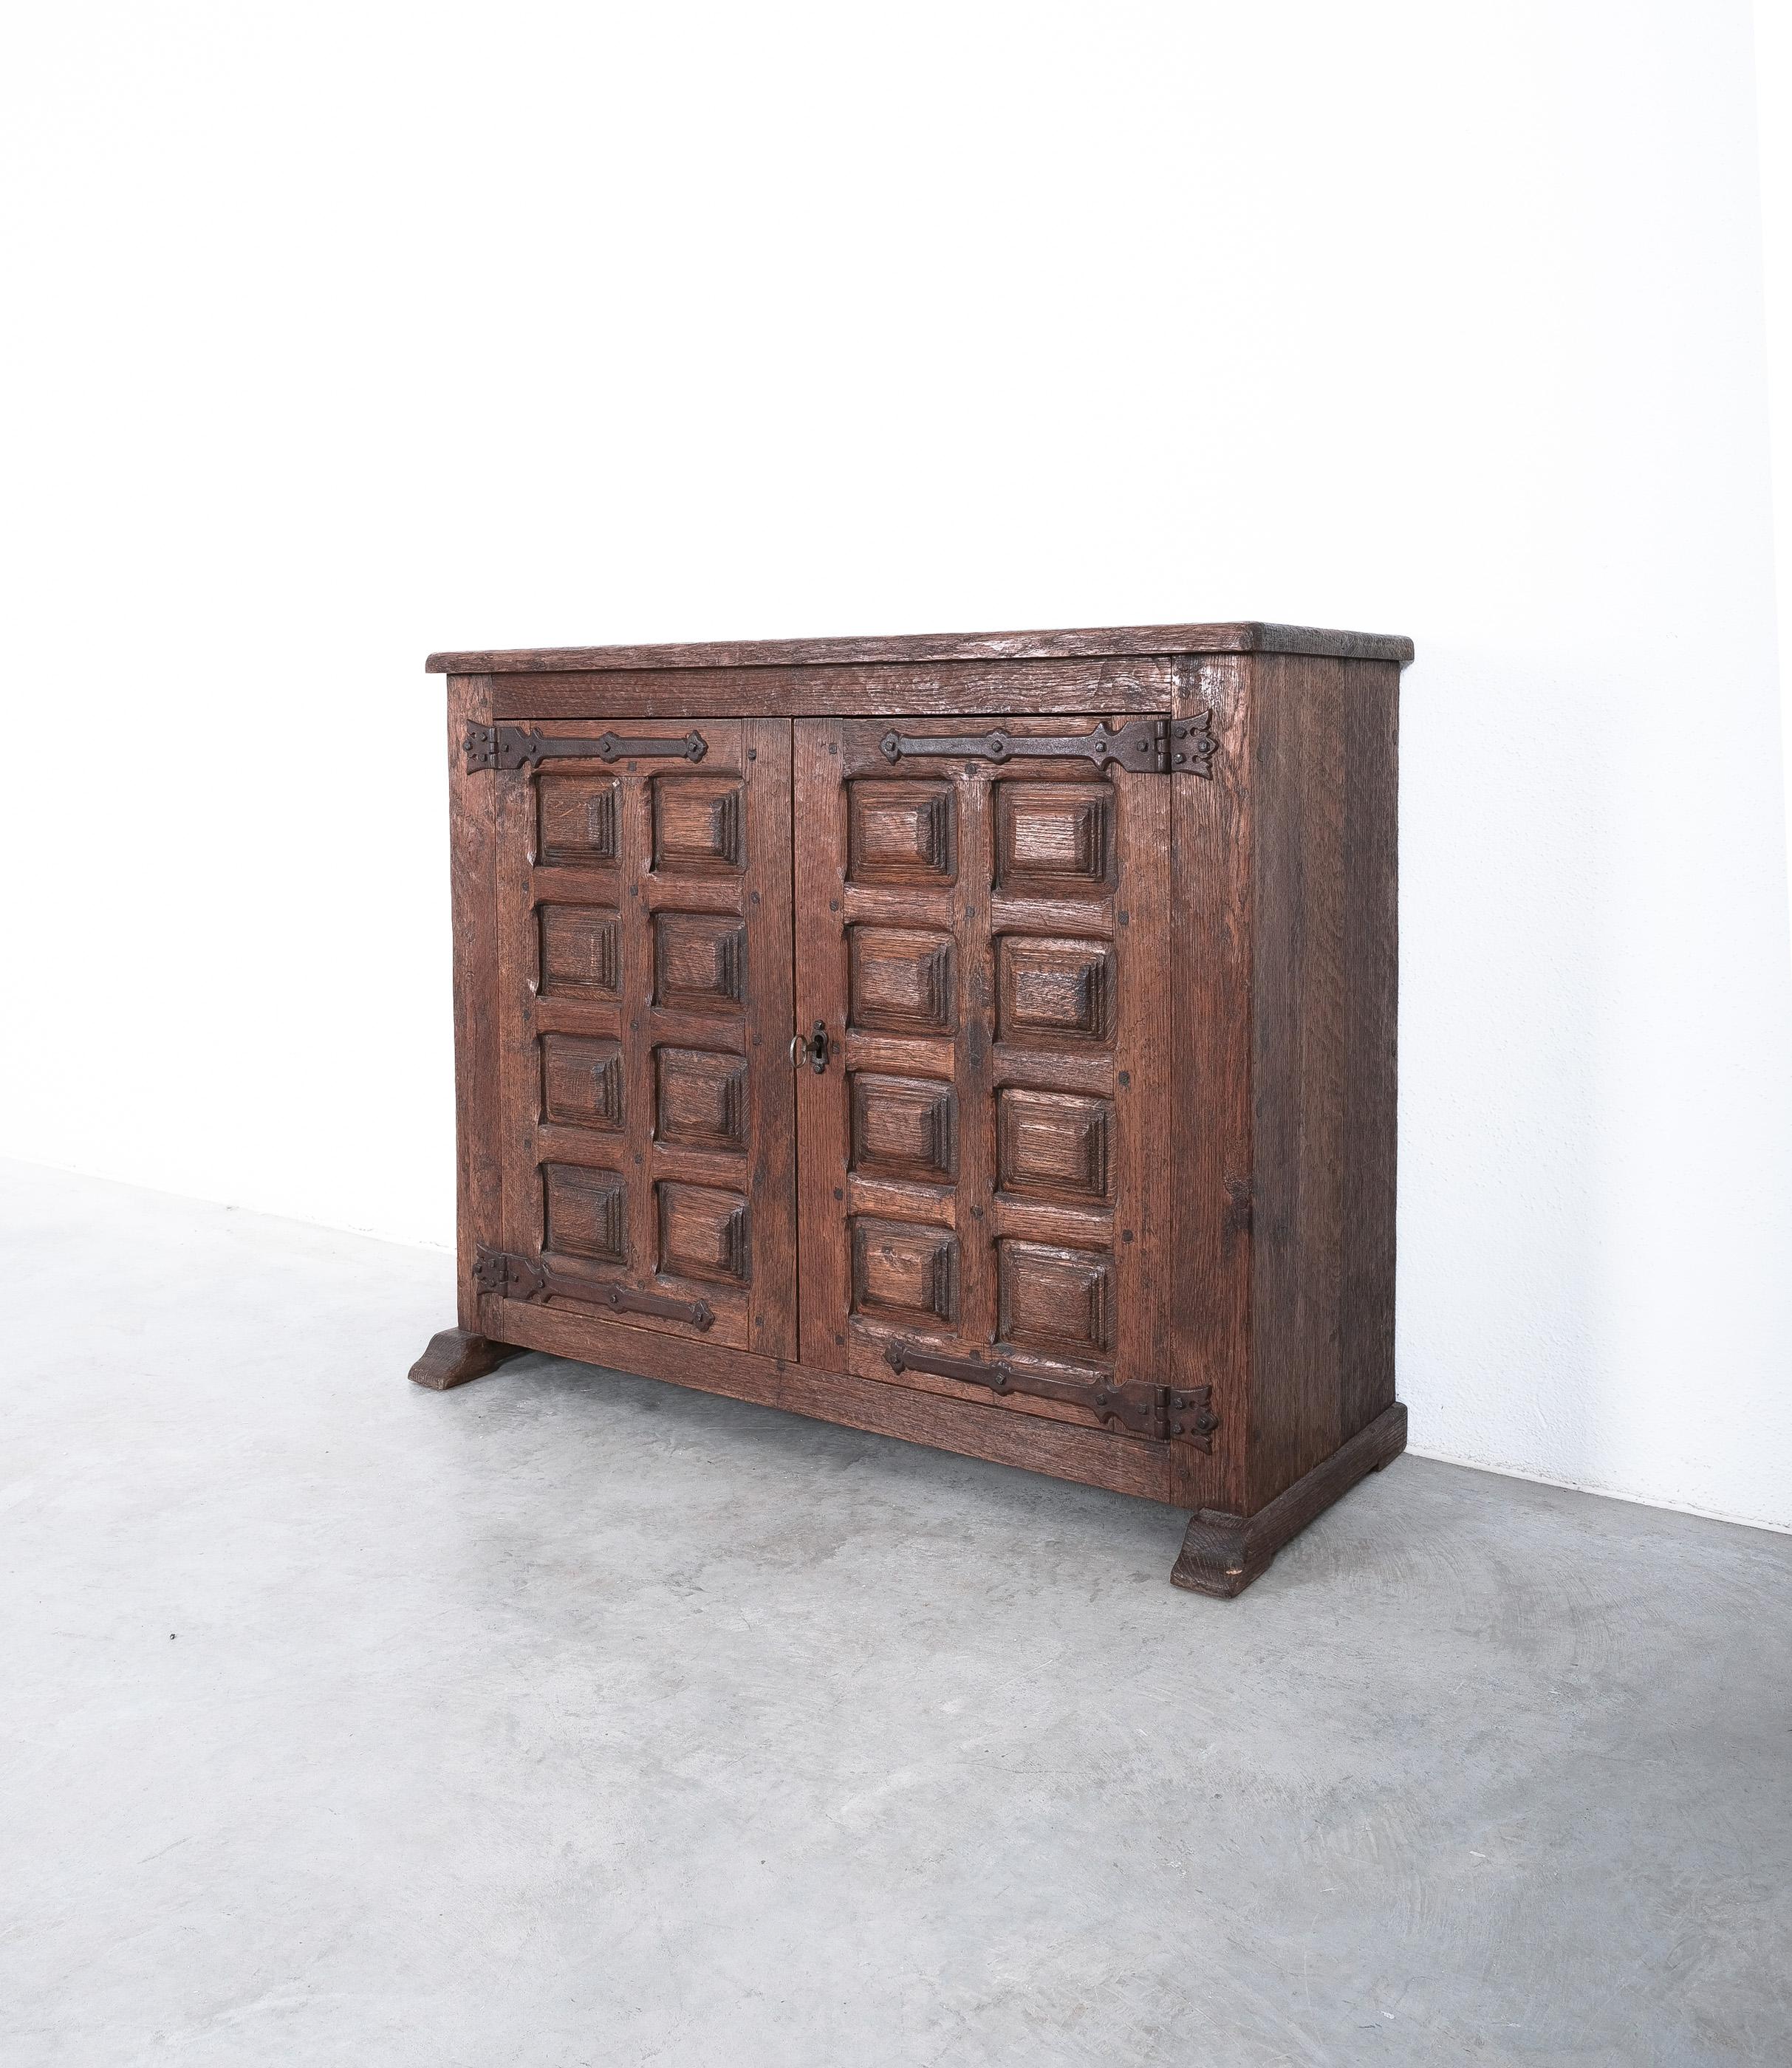 Hand-Carved Brutalist Artisan Oak Cabinet or Sideboard With Carved Details, 1940 France For Sale